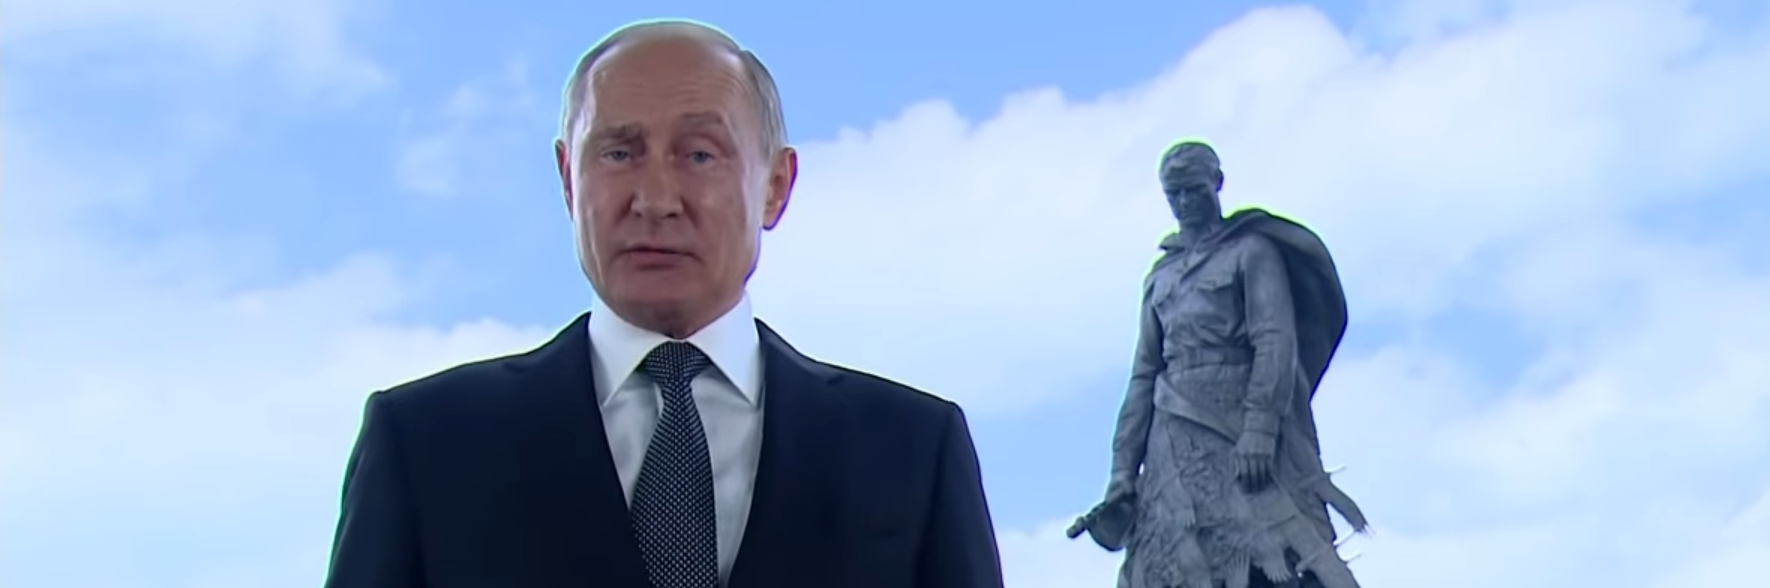 Путин обратился к россиянам в предверии дня голосования: "Мы голосуем за страну..."